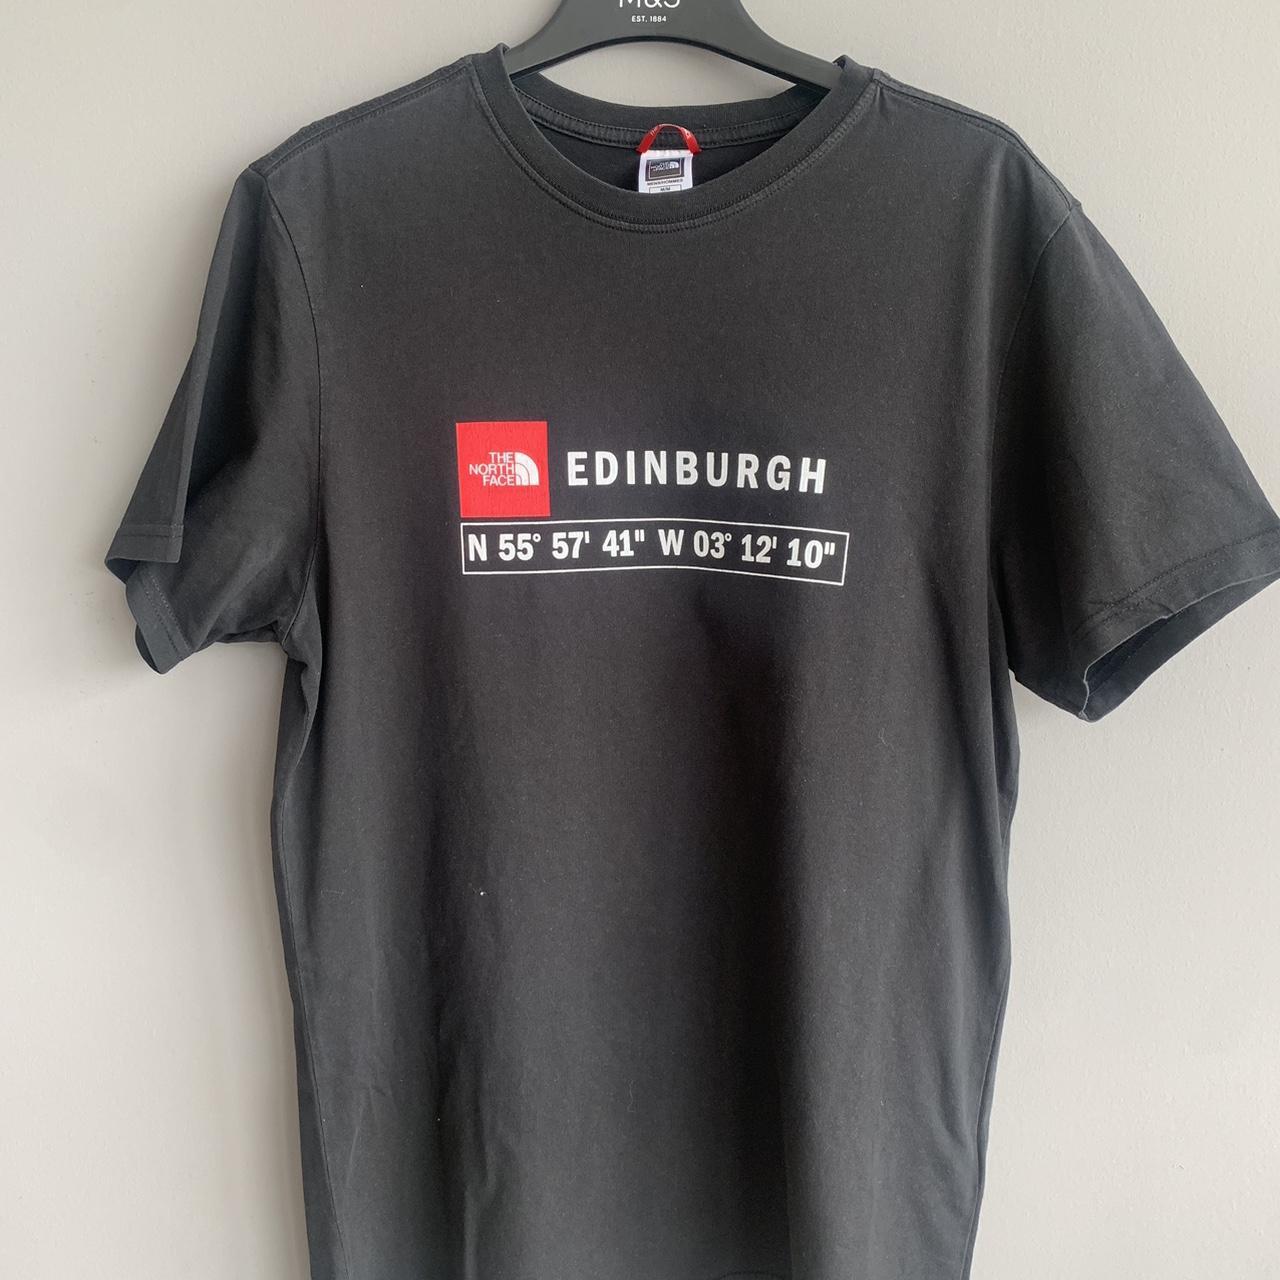 Gestaag Omgekeerde oogsten The North Face Edinburgh Coordinates T-Shirt men's... - Depop